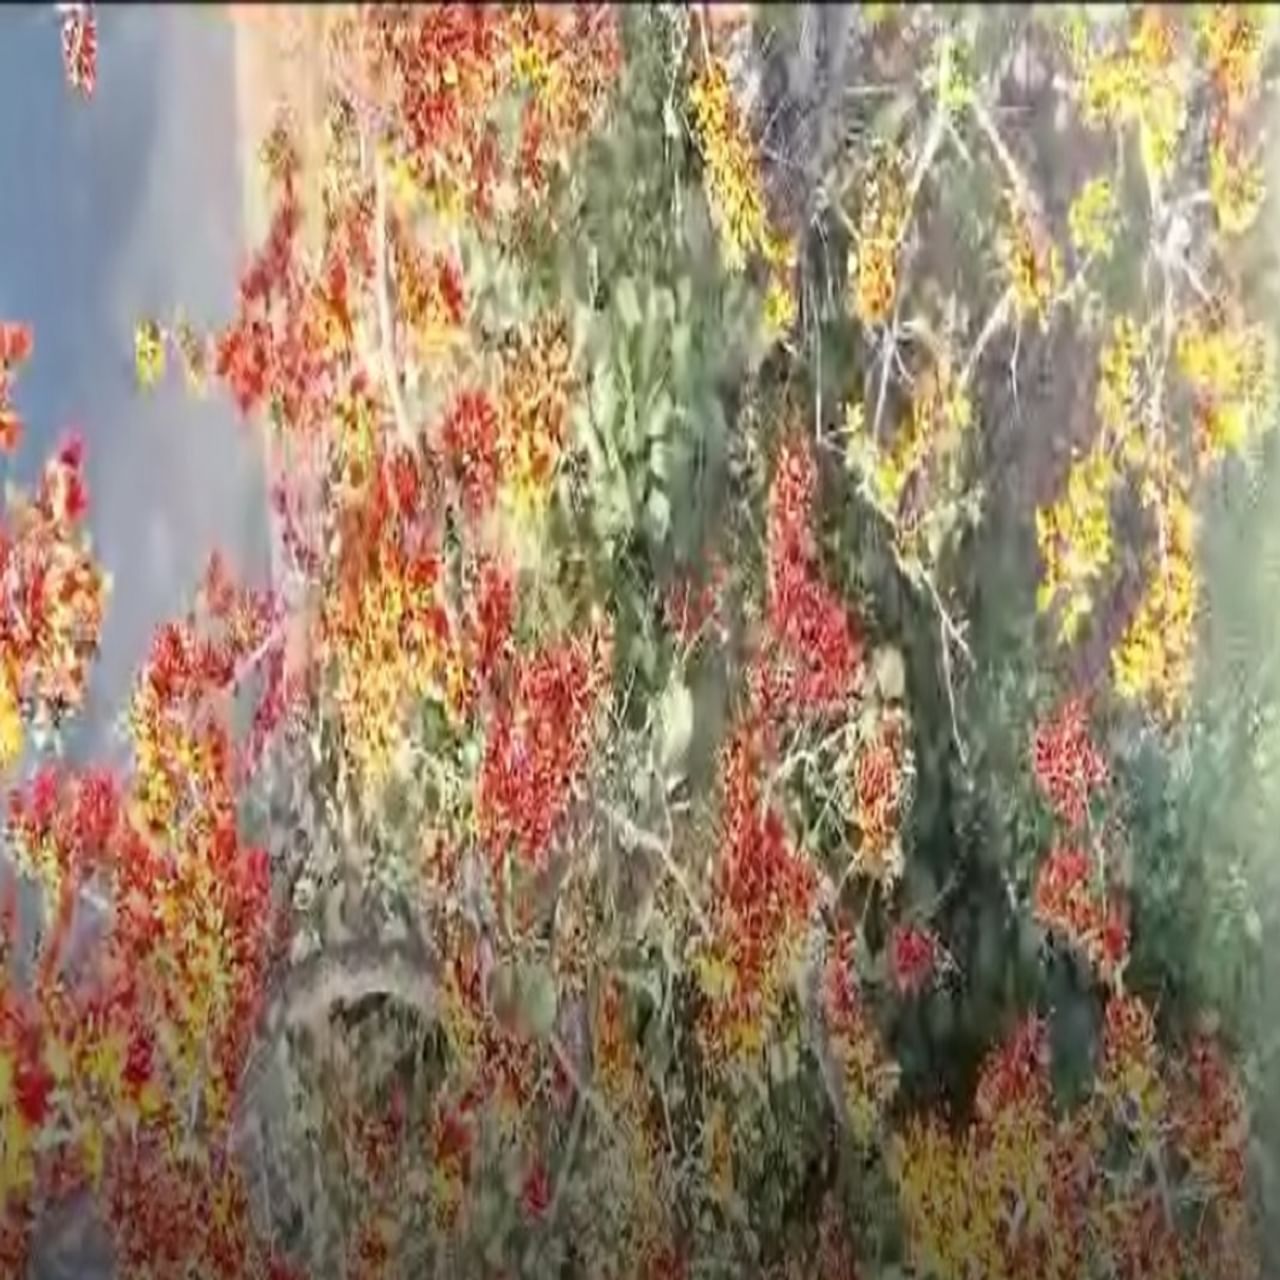 वसंत ऋतू लागताच गोंदियामध्ये पिवळ्या पळसाला फुल यायला सुरूवात झाली आहे. मात्र याअगोदर अनेकांनी वेगवेगळ्या रंगाची पळसाची फुले बघितली असतील पण पिवळ्या रंगाच्या पळसाची बातच न्यारी आहे. 